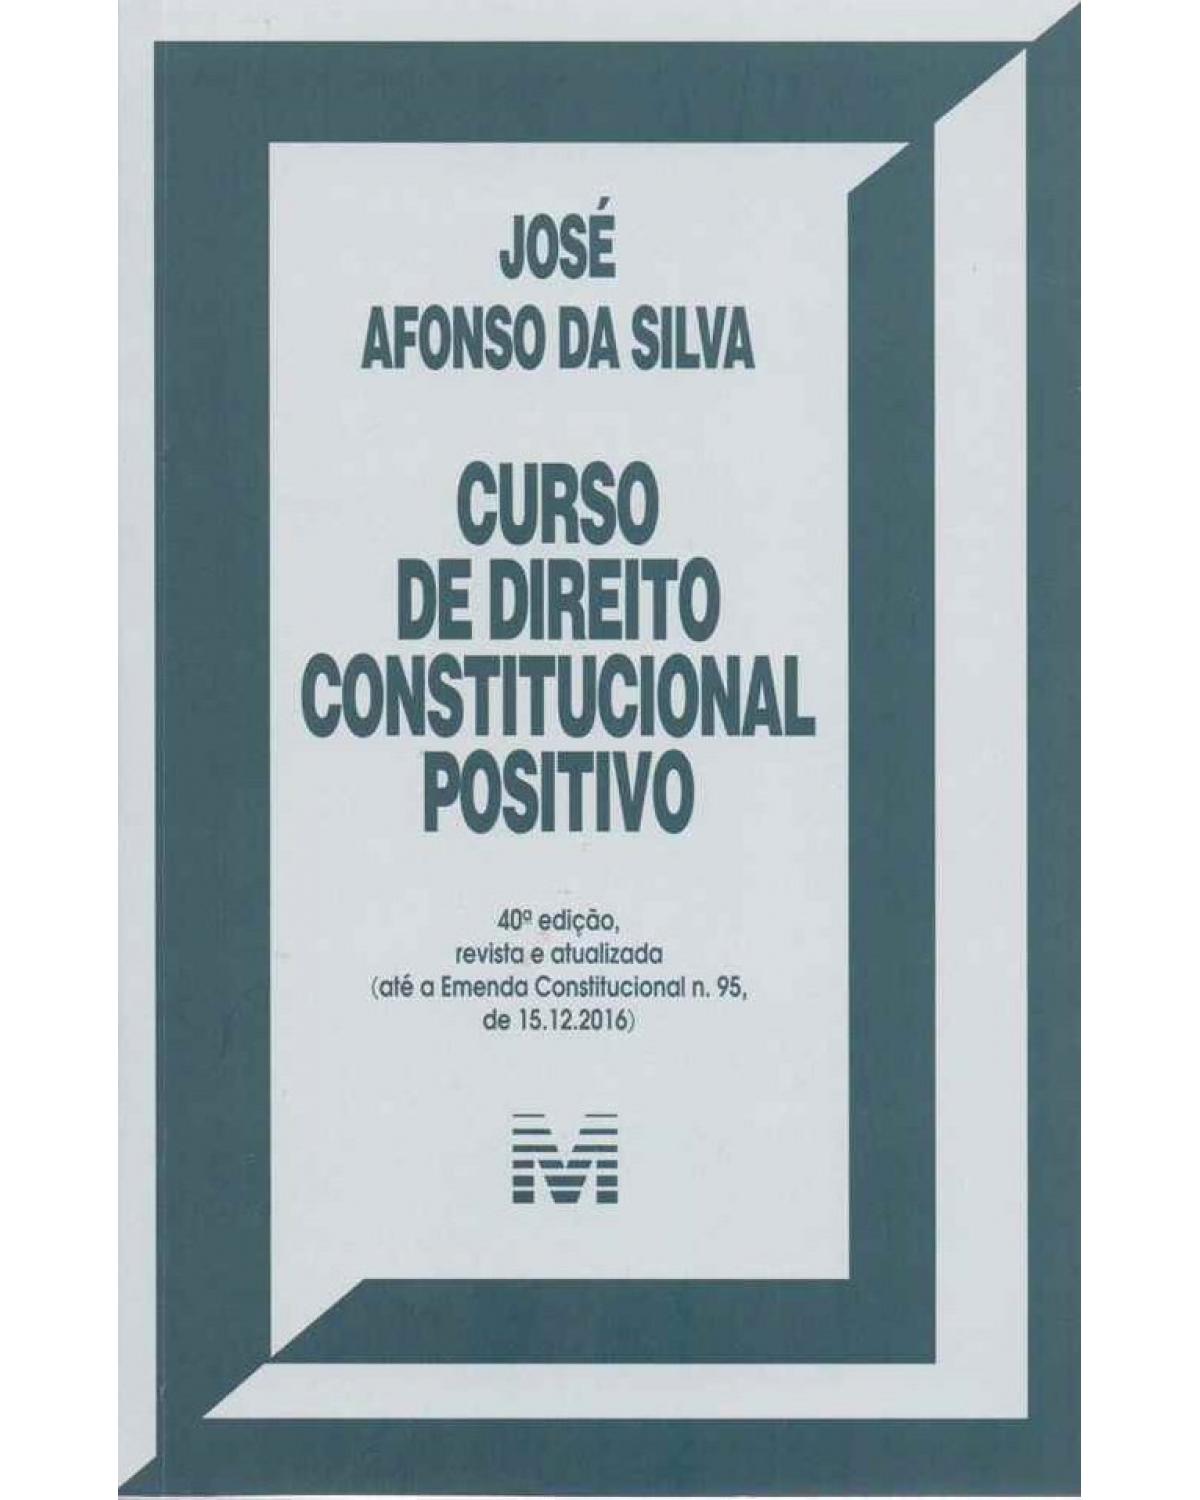 Curso de direito constitucional positivo - 40ª Edição